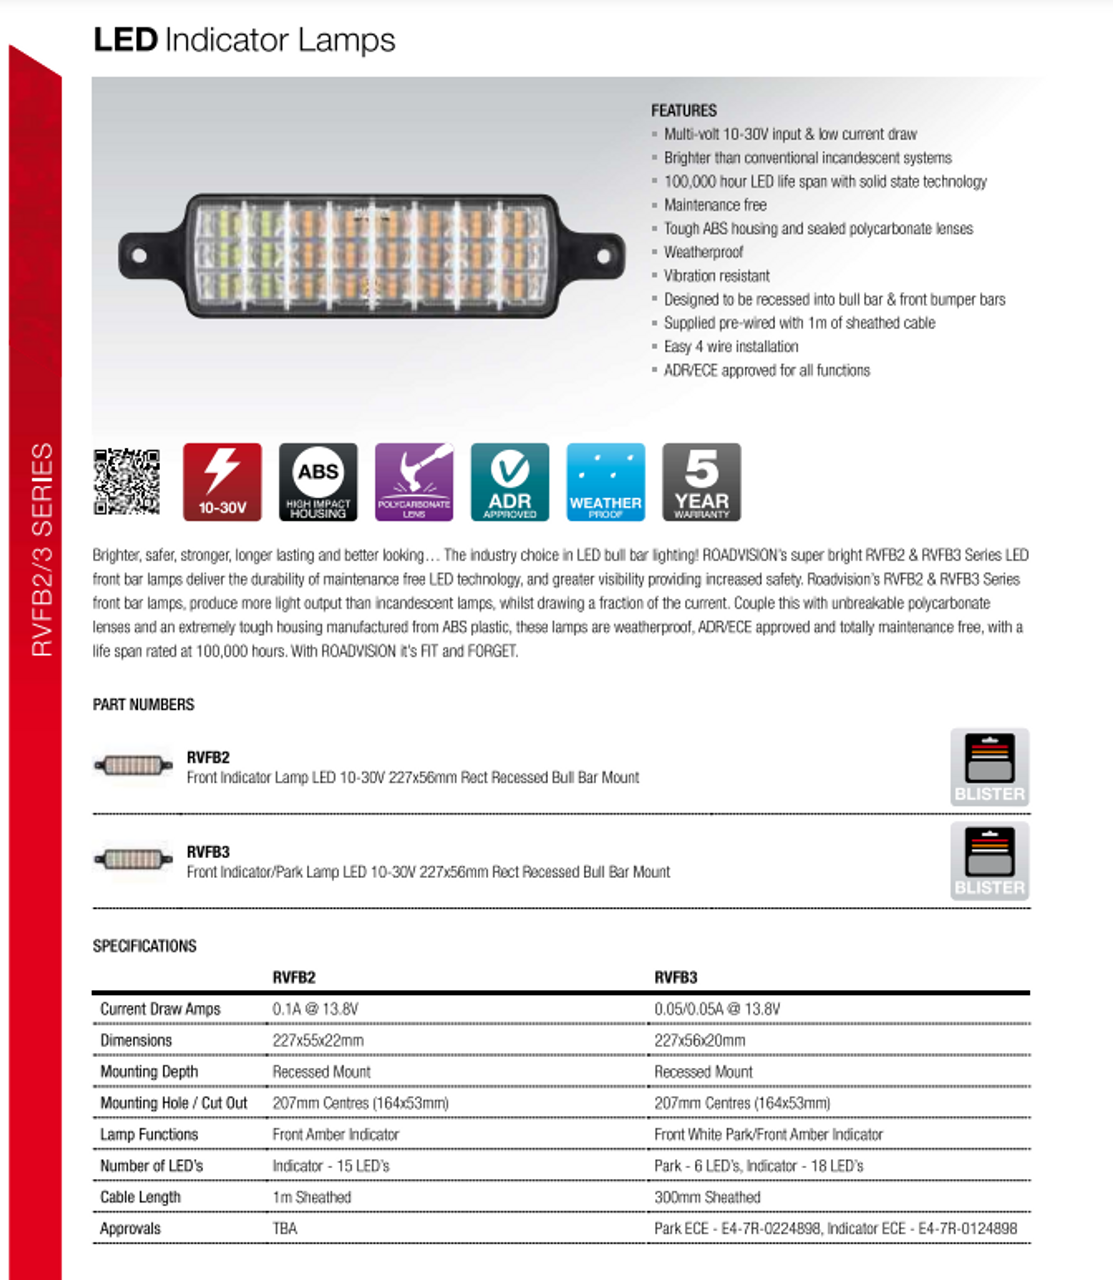 Front Bull Bar Indicator LED Light, Clear Lens with Amber LED's. Multi-Volt 12v & 24v DC. RVFB2 SERIES. Single Pack